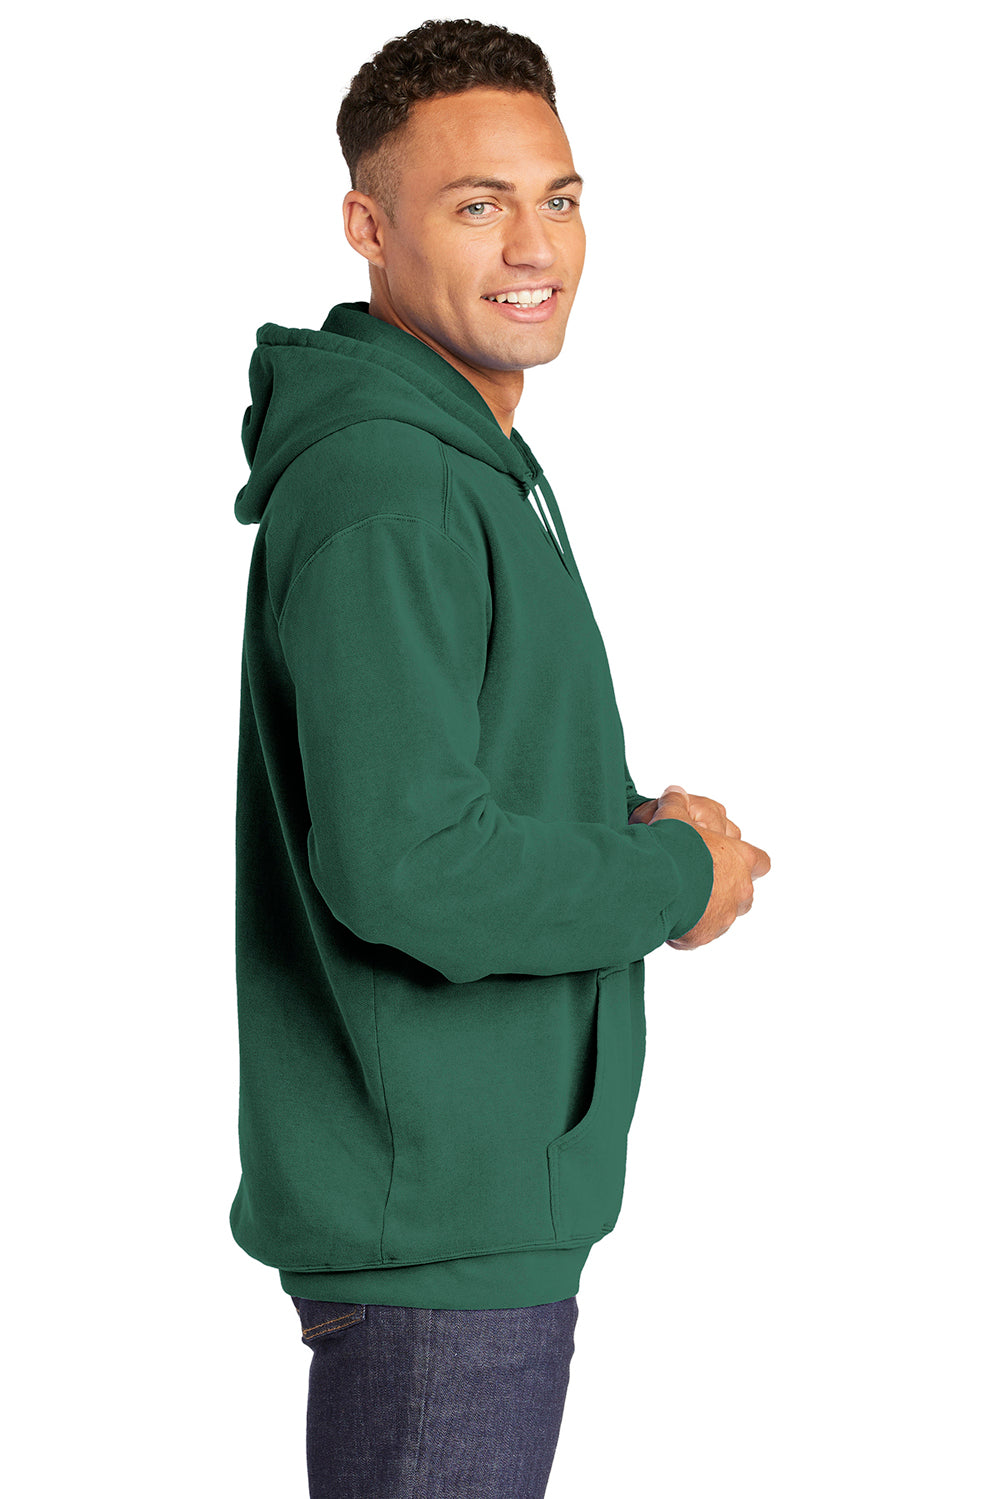 Comfort Colors 1567 Mens Hooded Sweatshirt Hoodie Light Green Side